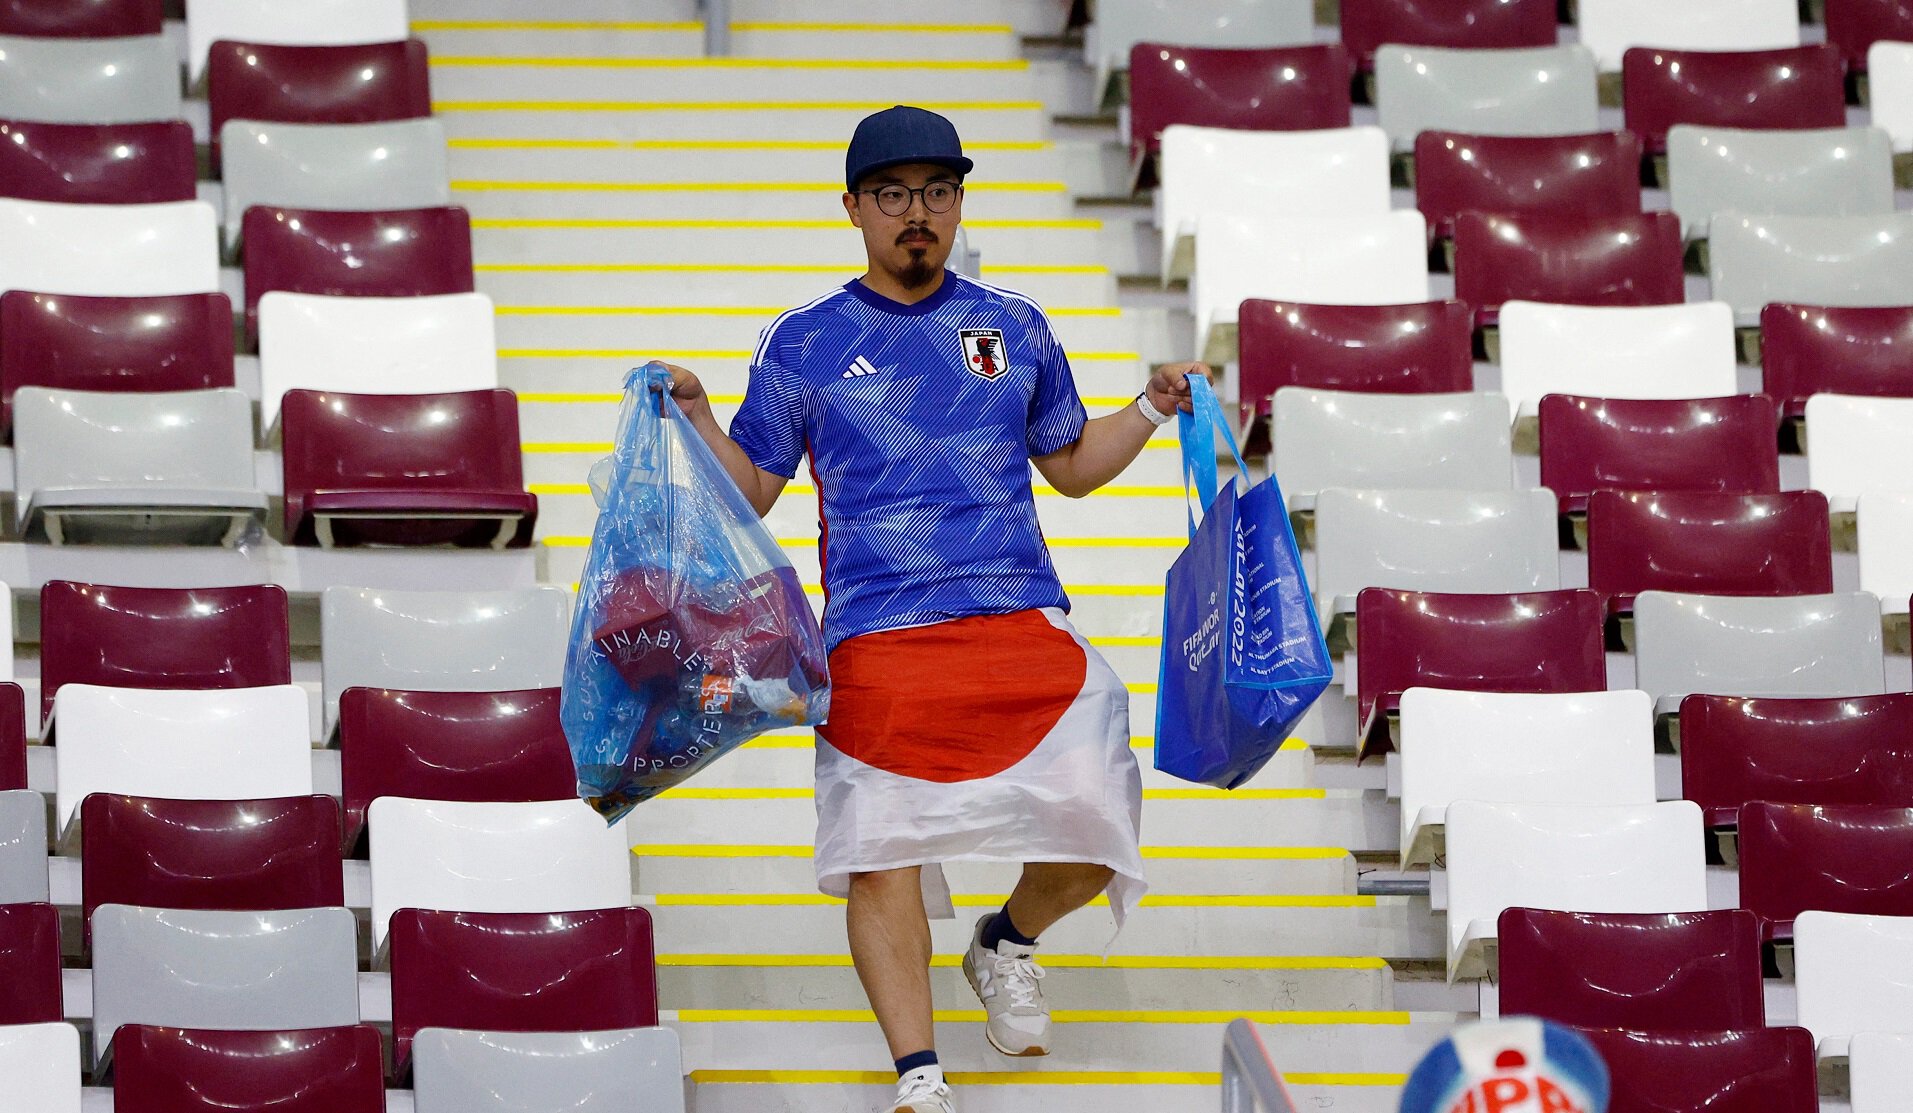 Японские болельщики убрали мусор за собой после матча с Испанией. Они делали так же после других игр ЧМ